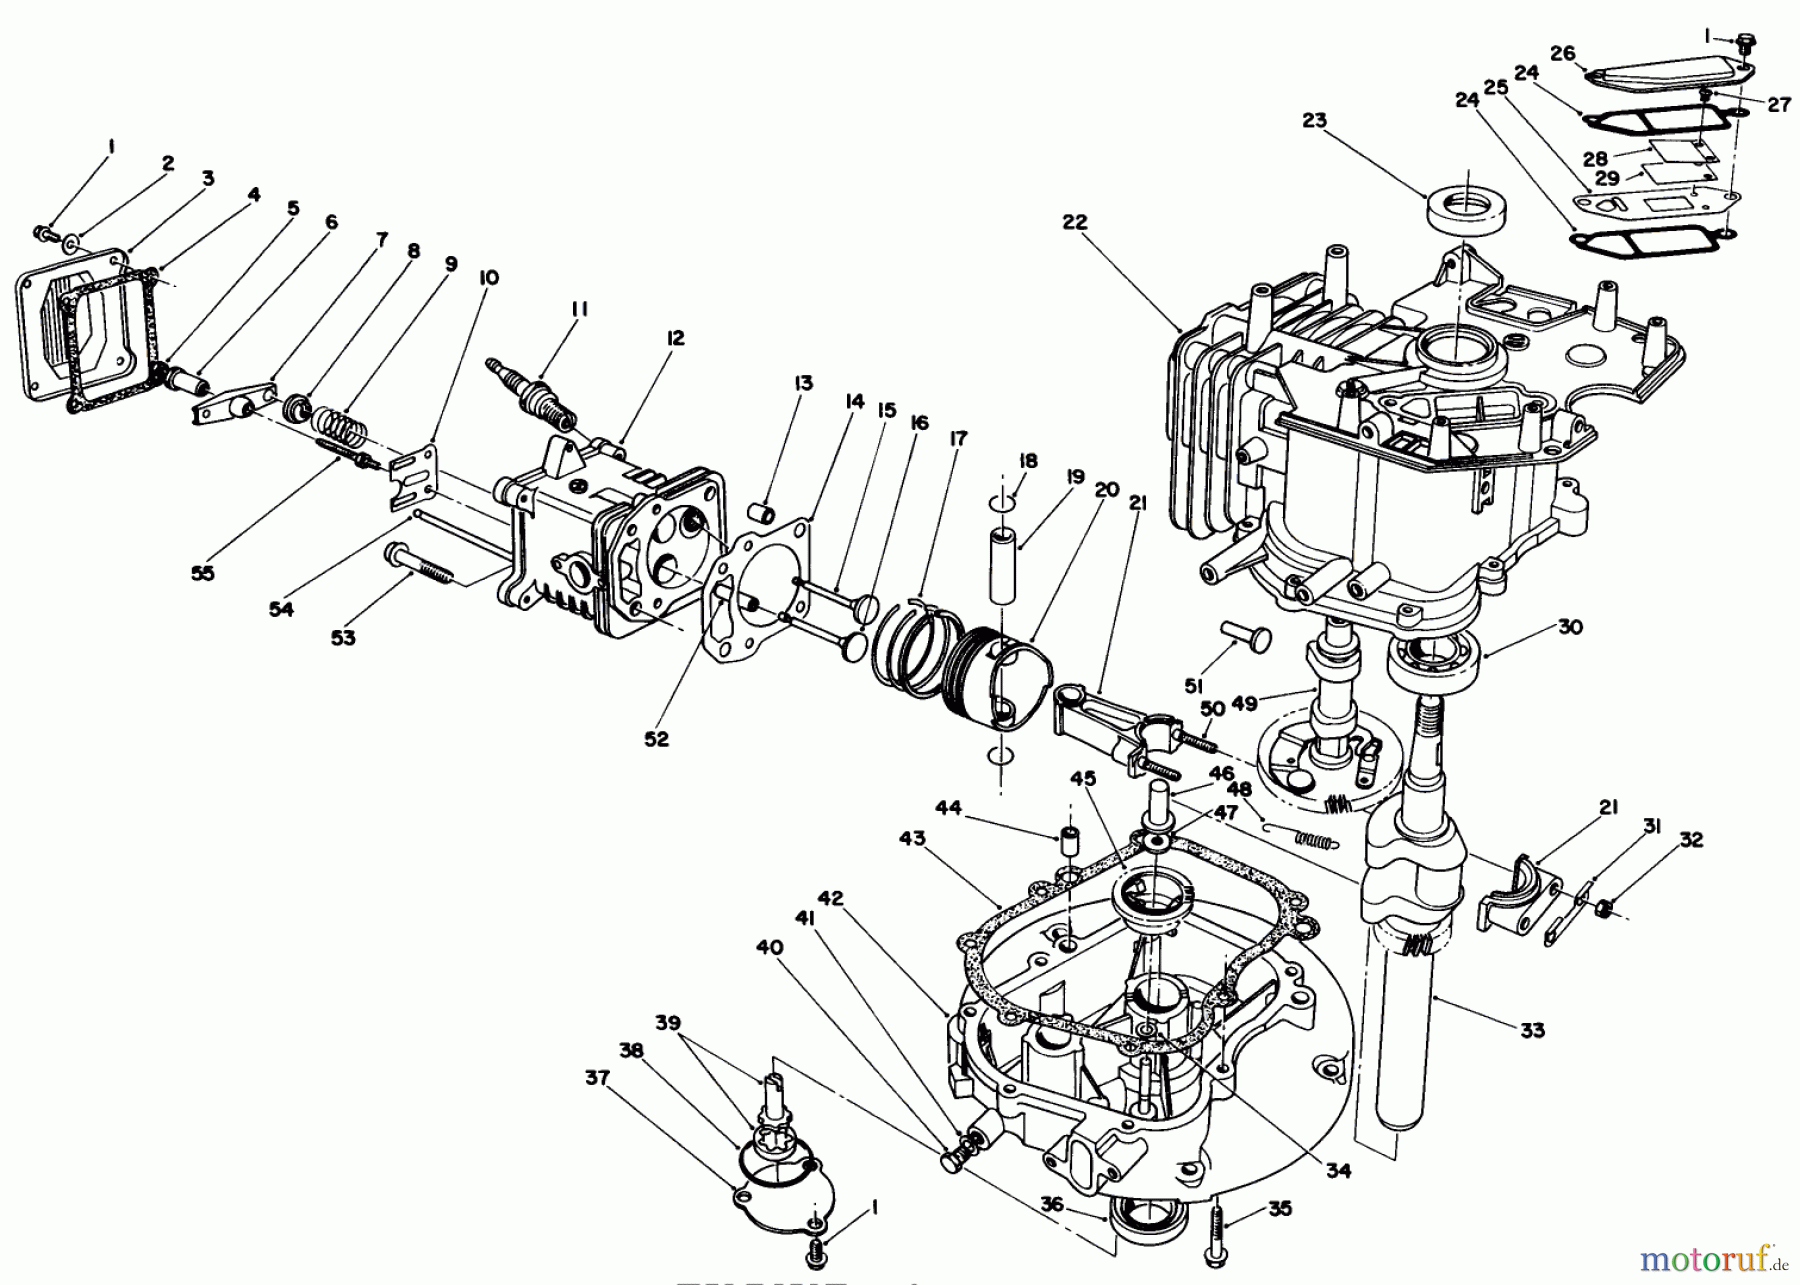  Toro Neu Mowers, Walk-Behind Seite 1 20629C - Toro Lawnmower, 1987 (7000001-7999999) ENGINE ASSEMBLY (MODEL NO. VMG6)